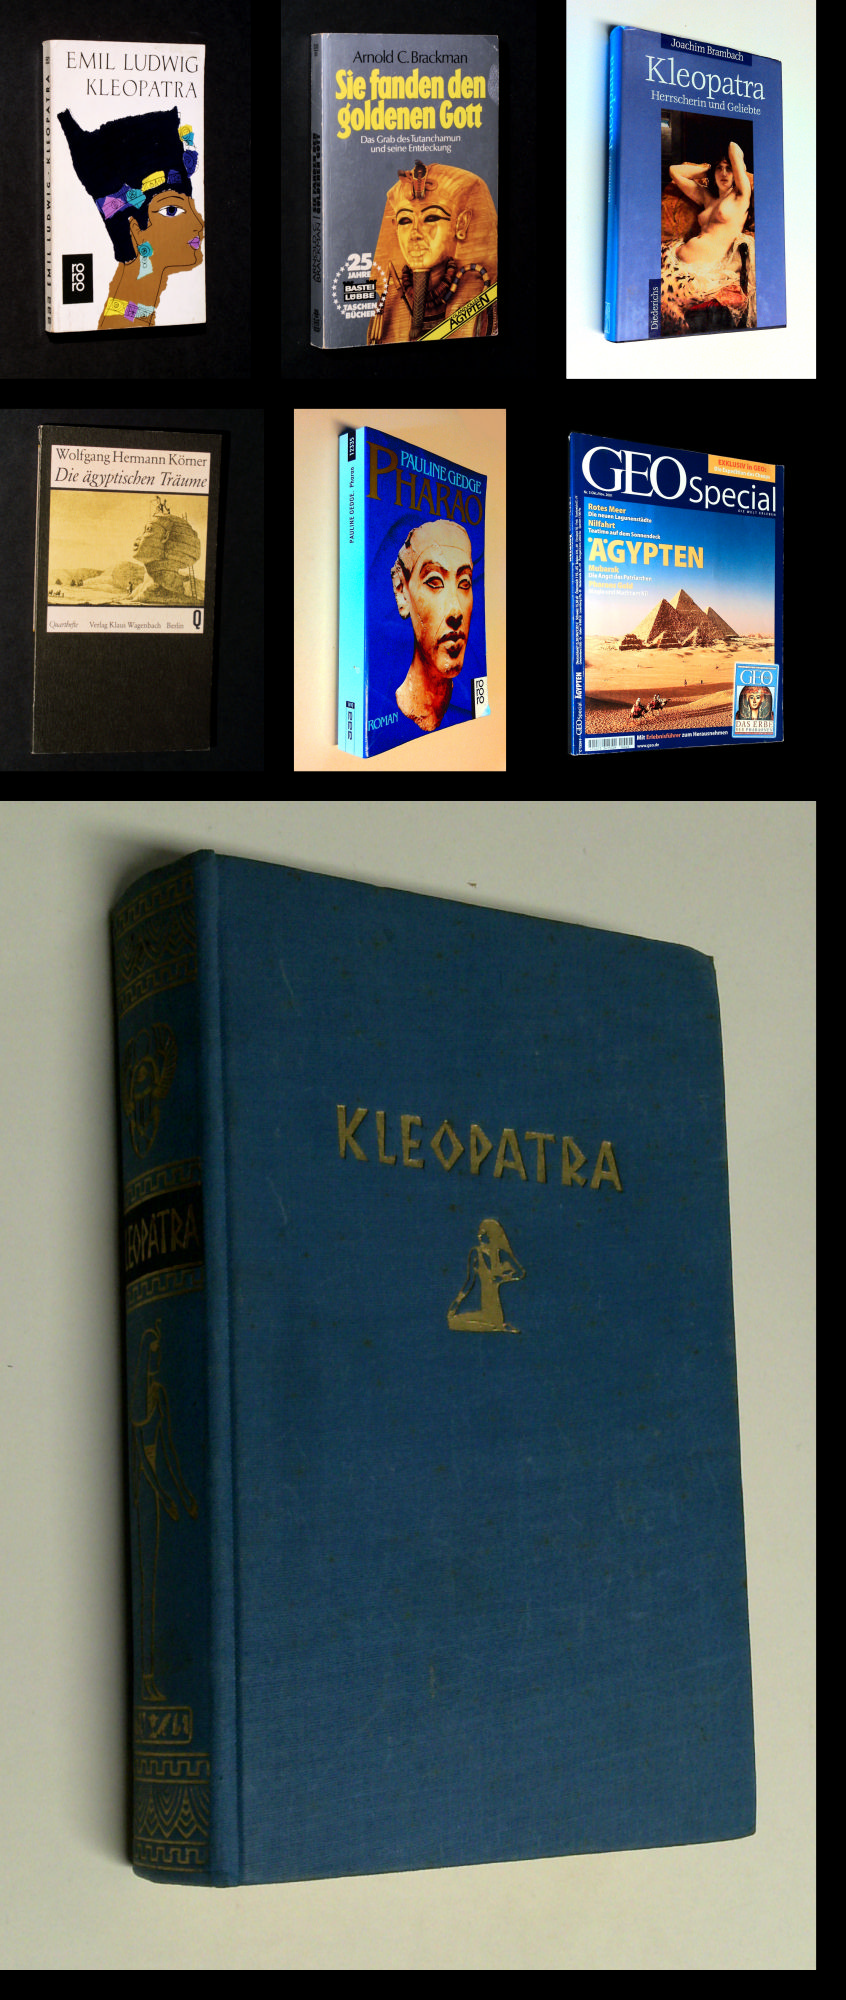 Äpypten - KIeopatra u. a. - 6 Bücher & 1 Geo-Spezial